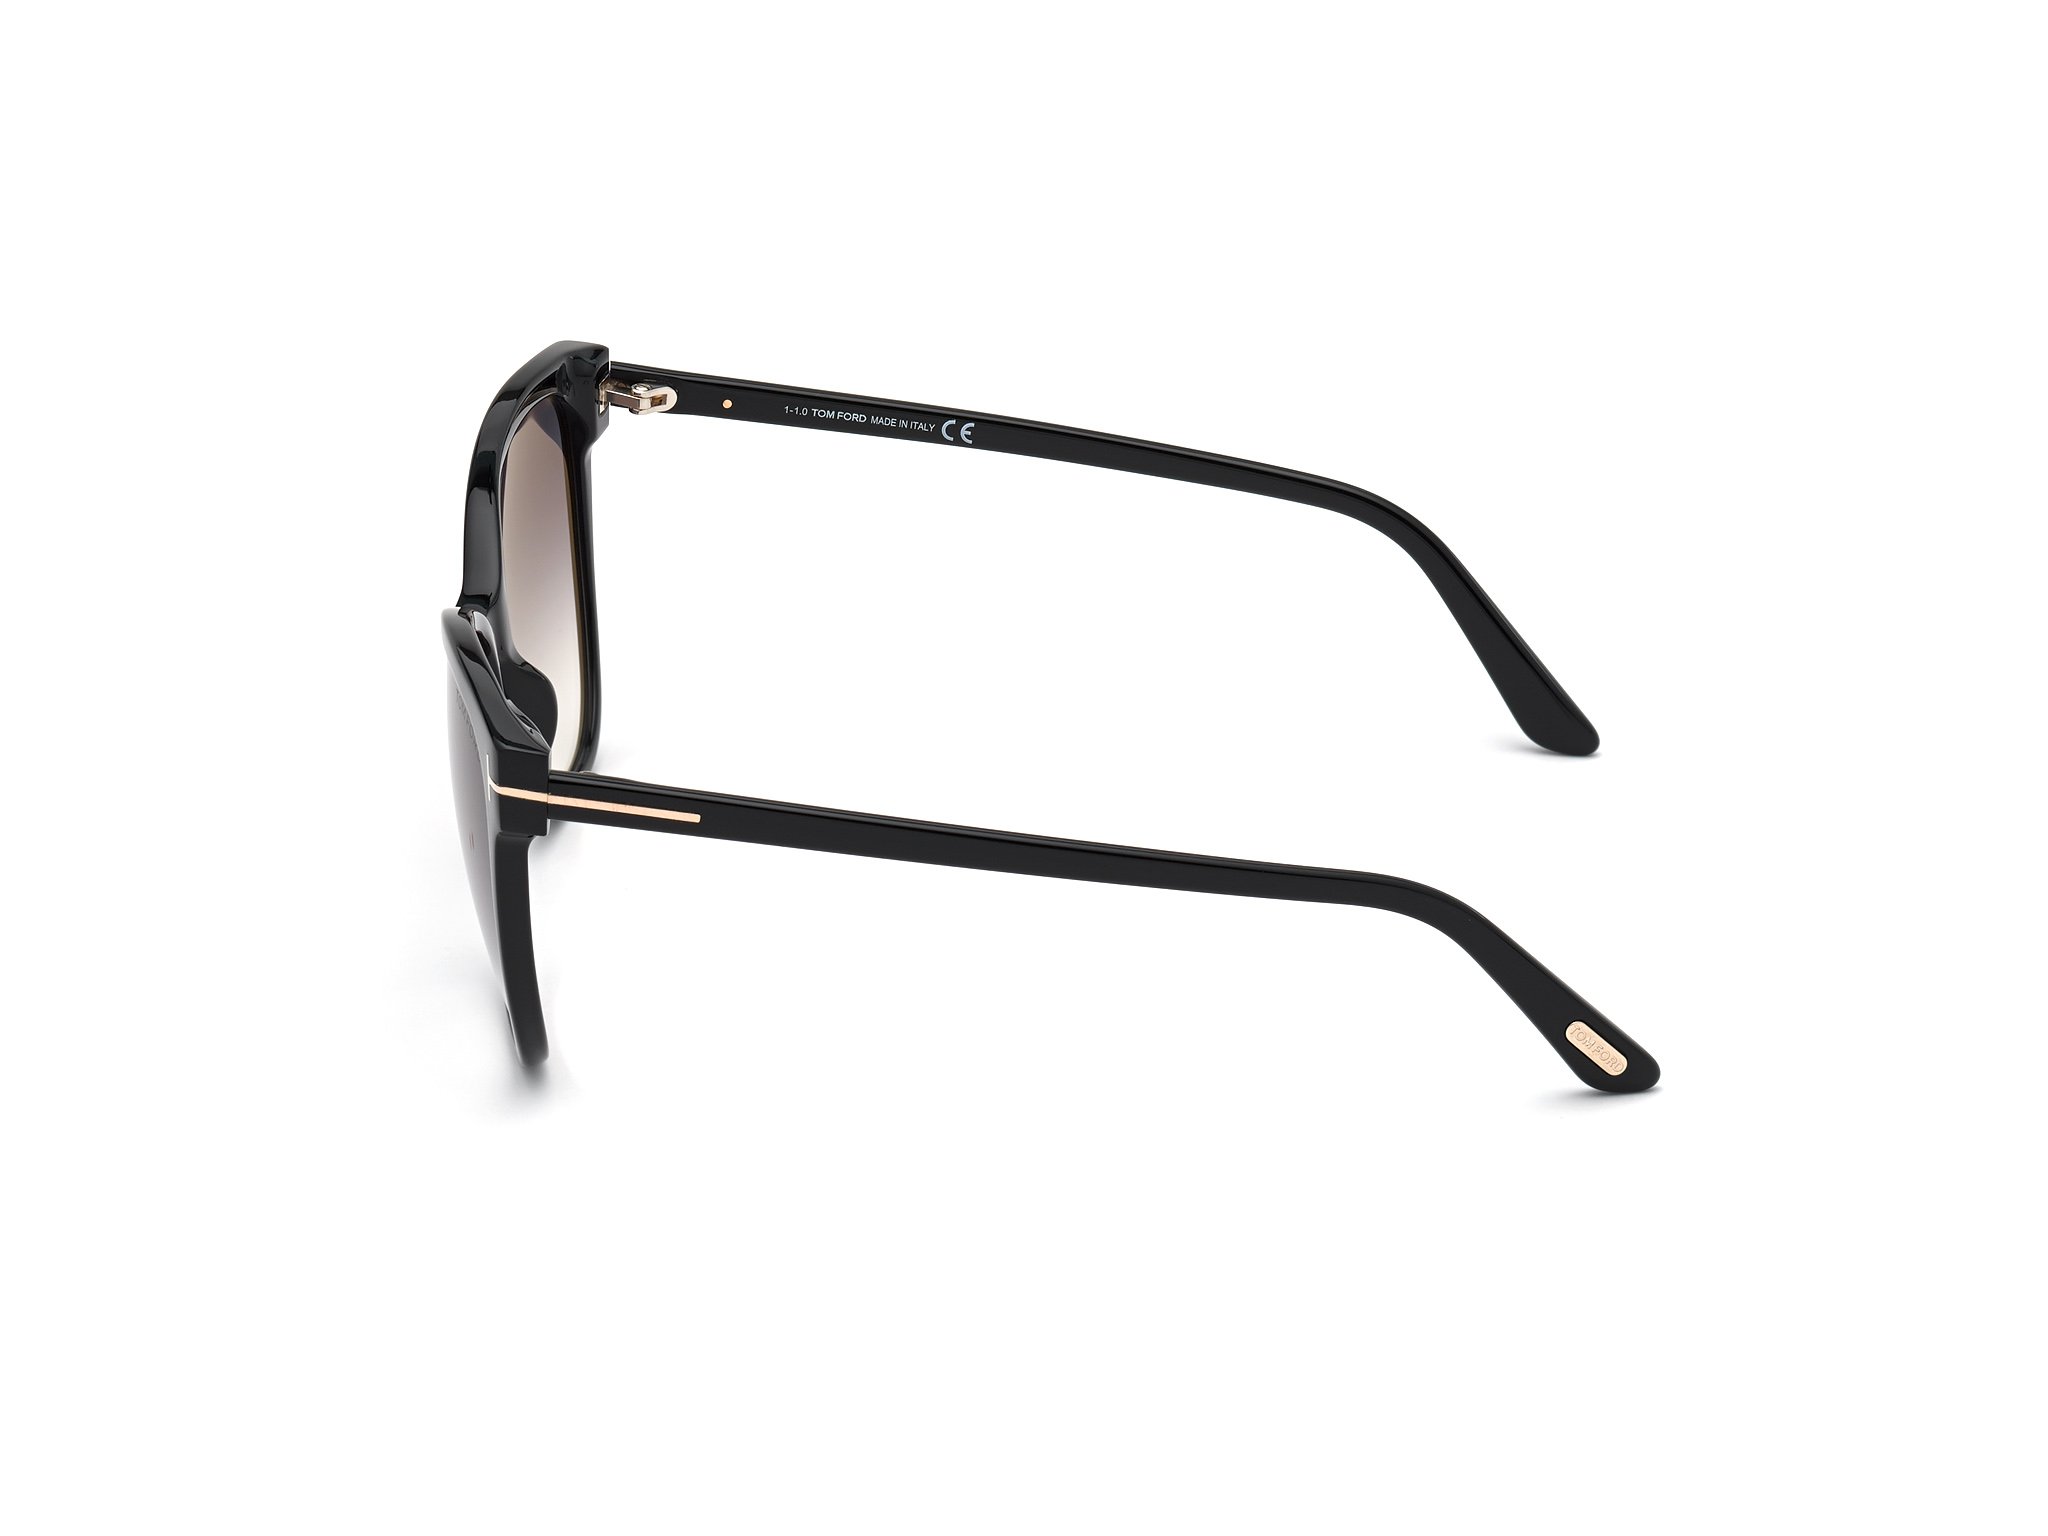 Das Bild zeigt die Sonnenbrille ANI FT0844 von der Marke Tom Ford in schwarz seitlich